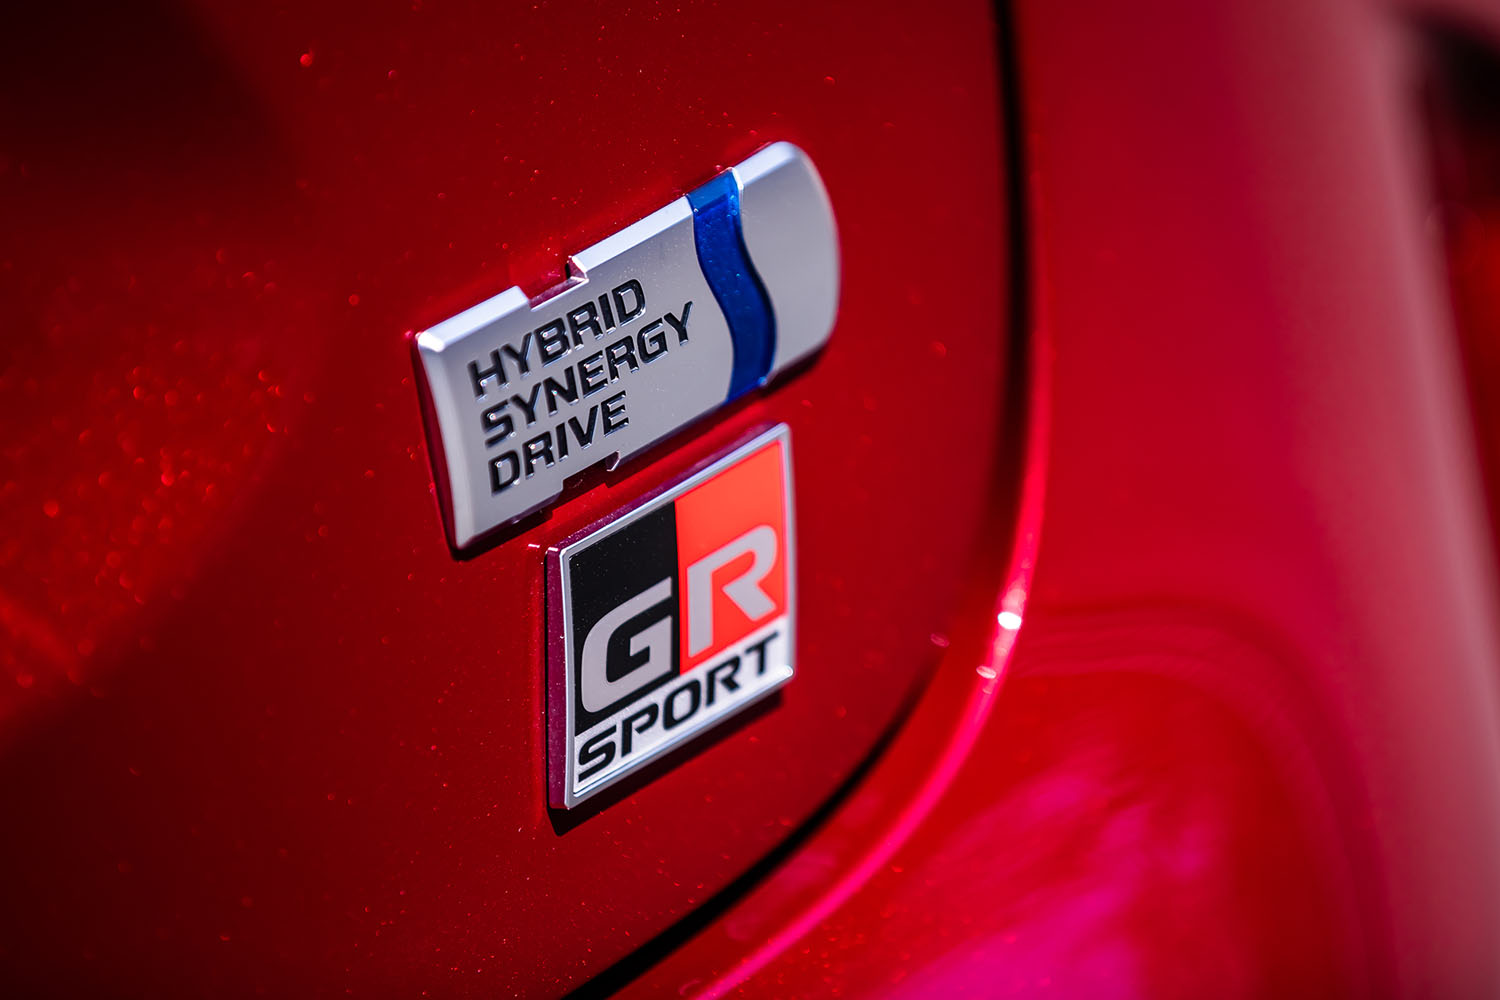 「ヤリス クロスGRスポーツ」には、システム最高出力116PSのハイブリッドモデルと、最高出力120PSの純ガソリンモデルがラインナップされる。今回は前者に試乗した。車両本体価格はハイブリッドモデルが275万円、純ガソリンモデルが236万7000円。